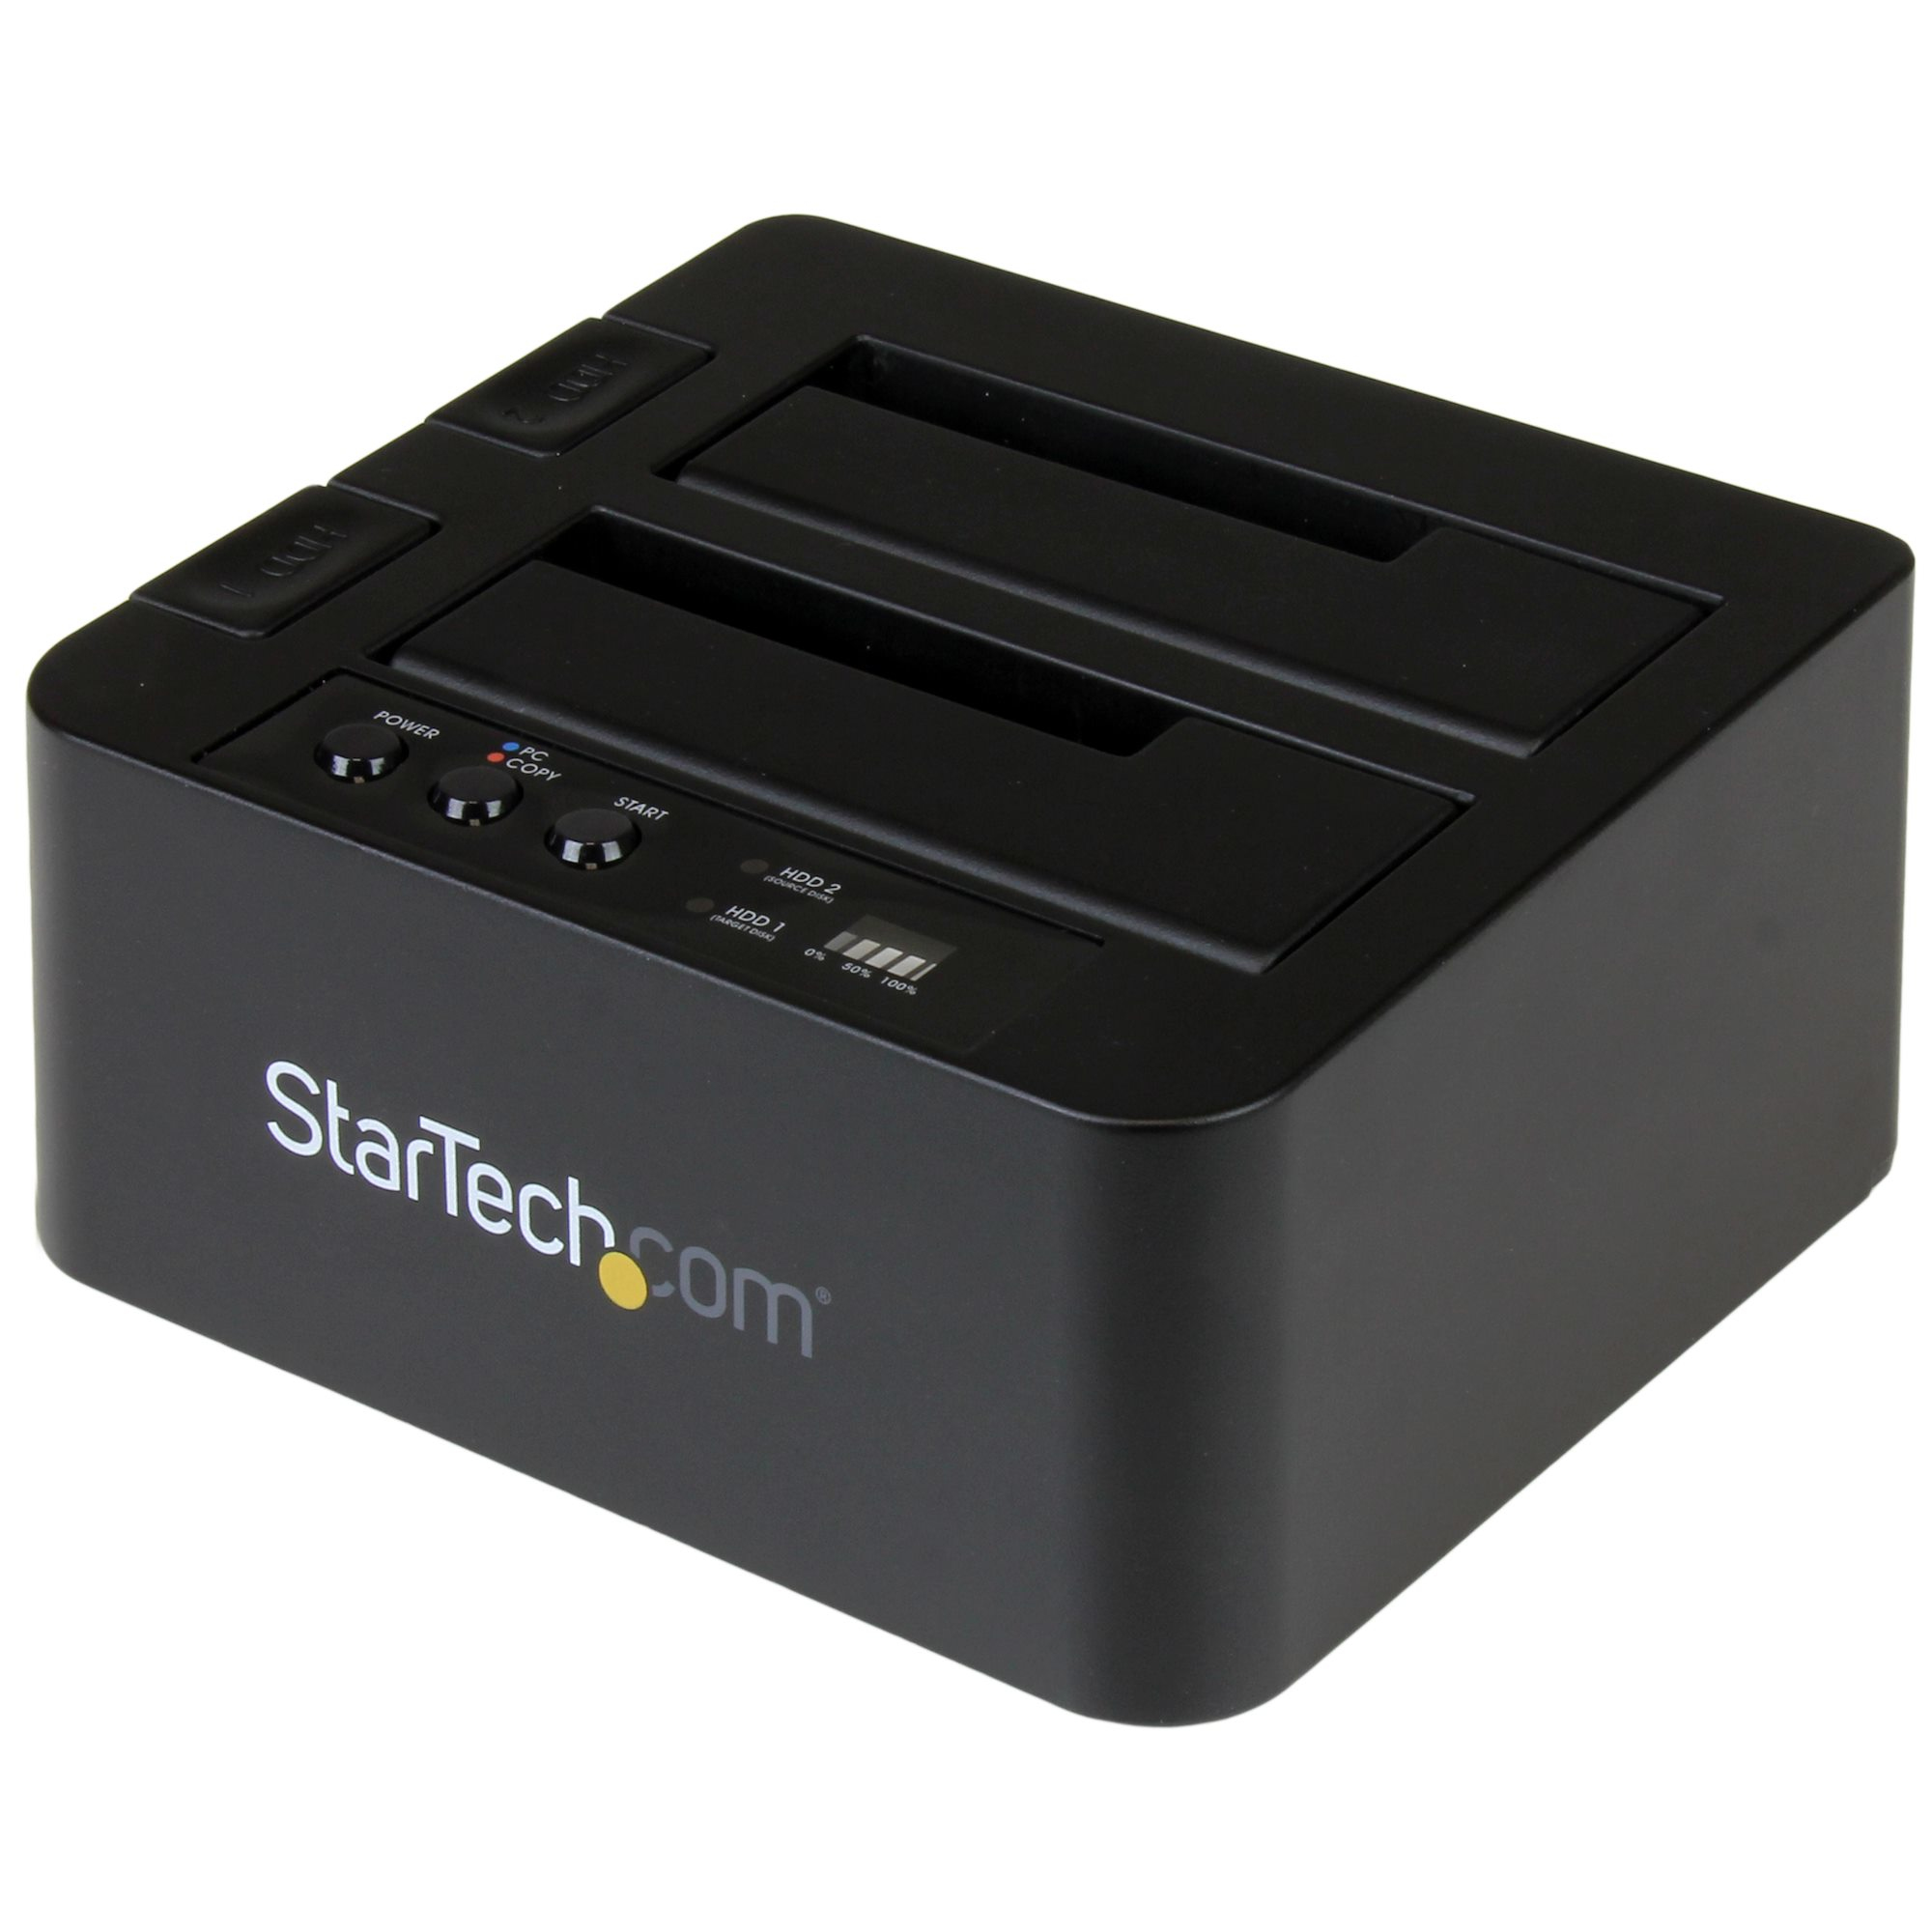 StarTech.com USB 3.1 (10 Gbps) fristående dupliceringsdockningsstation för 2,5' & 3,5' SATA SSD/HDD-enheter - med snabb duplicering på upp till 28 GB/min